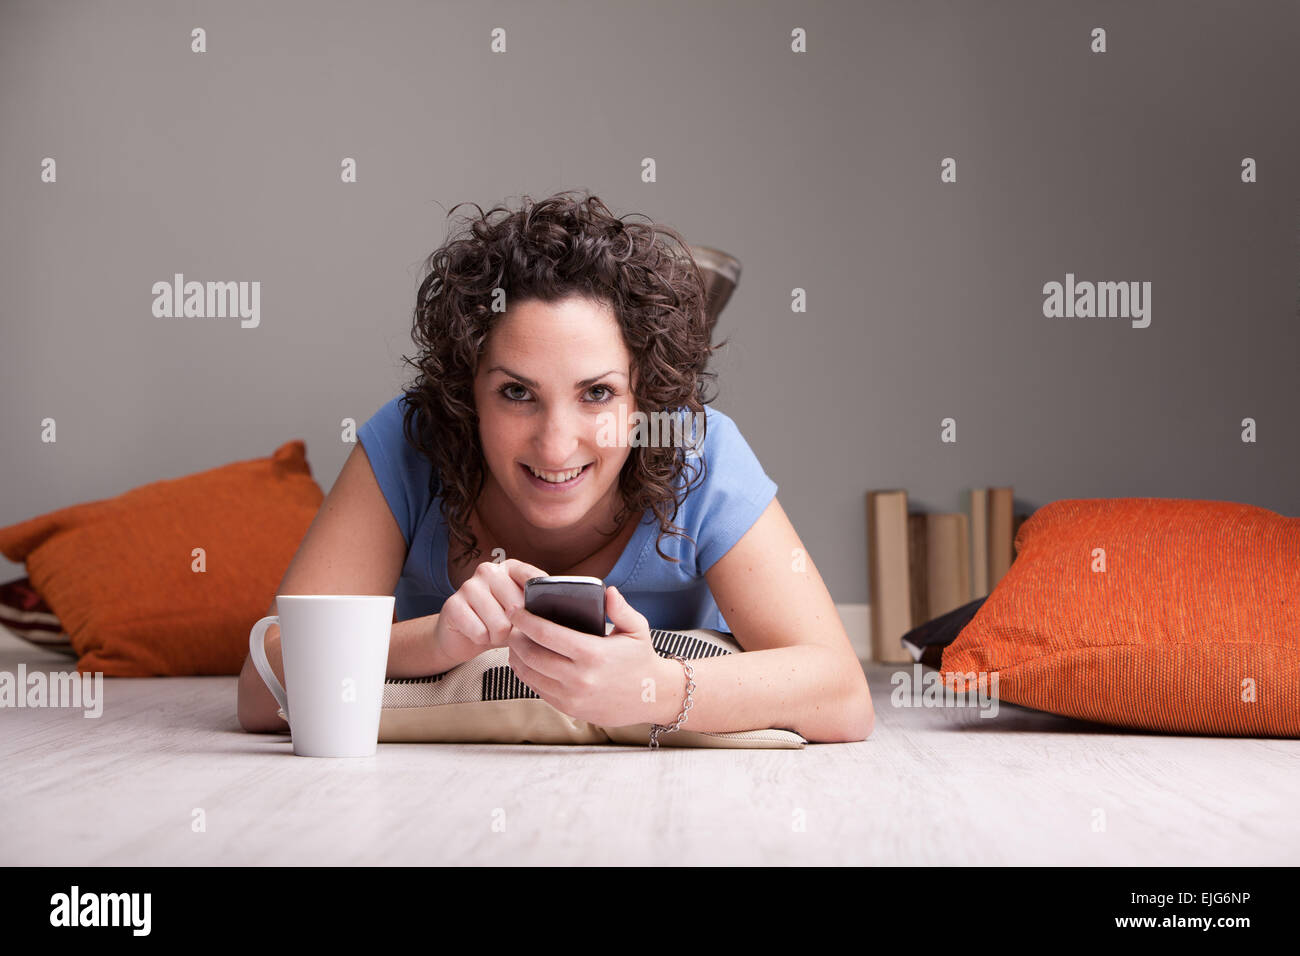 Girl enjoying son téléphone portable tout en buvant dans une tasse blanche Banque D'Images